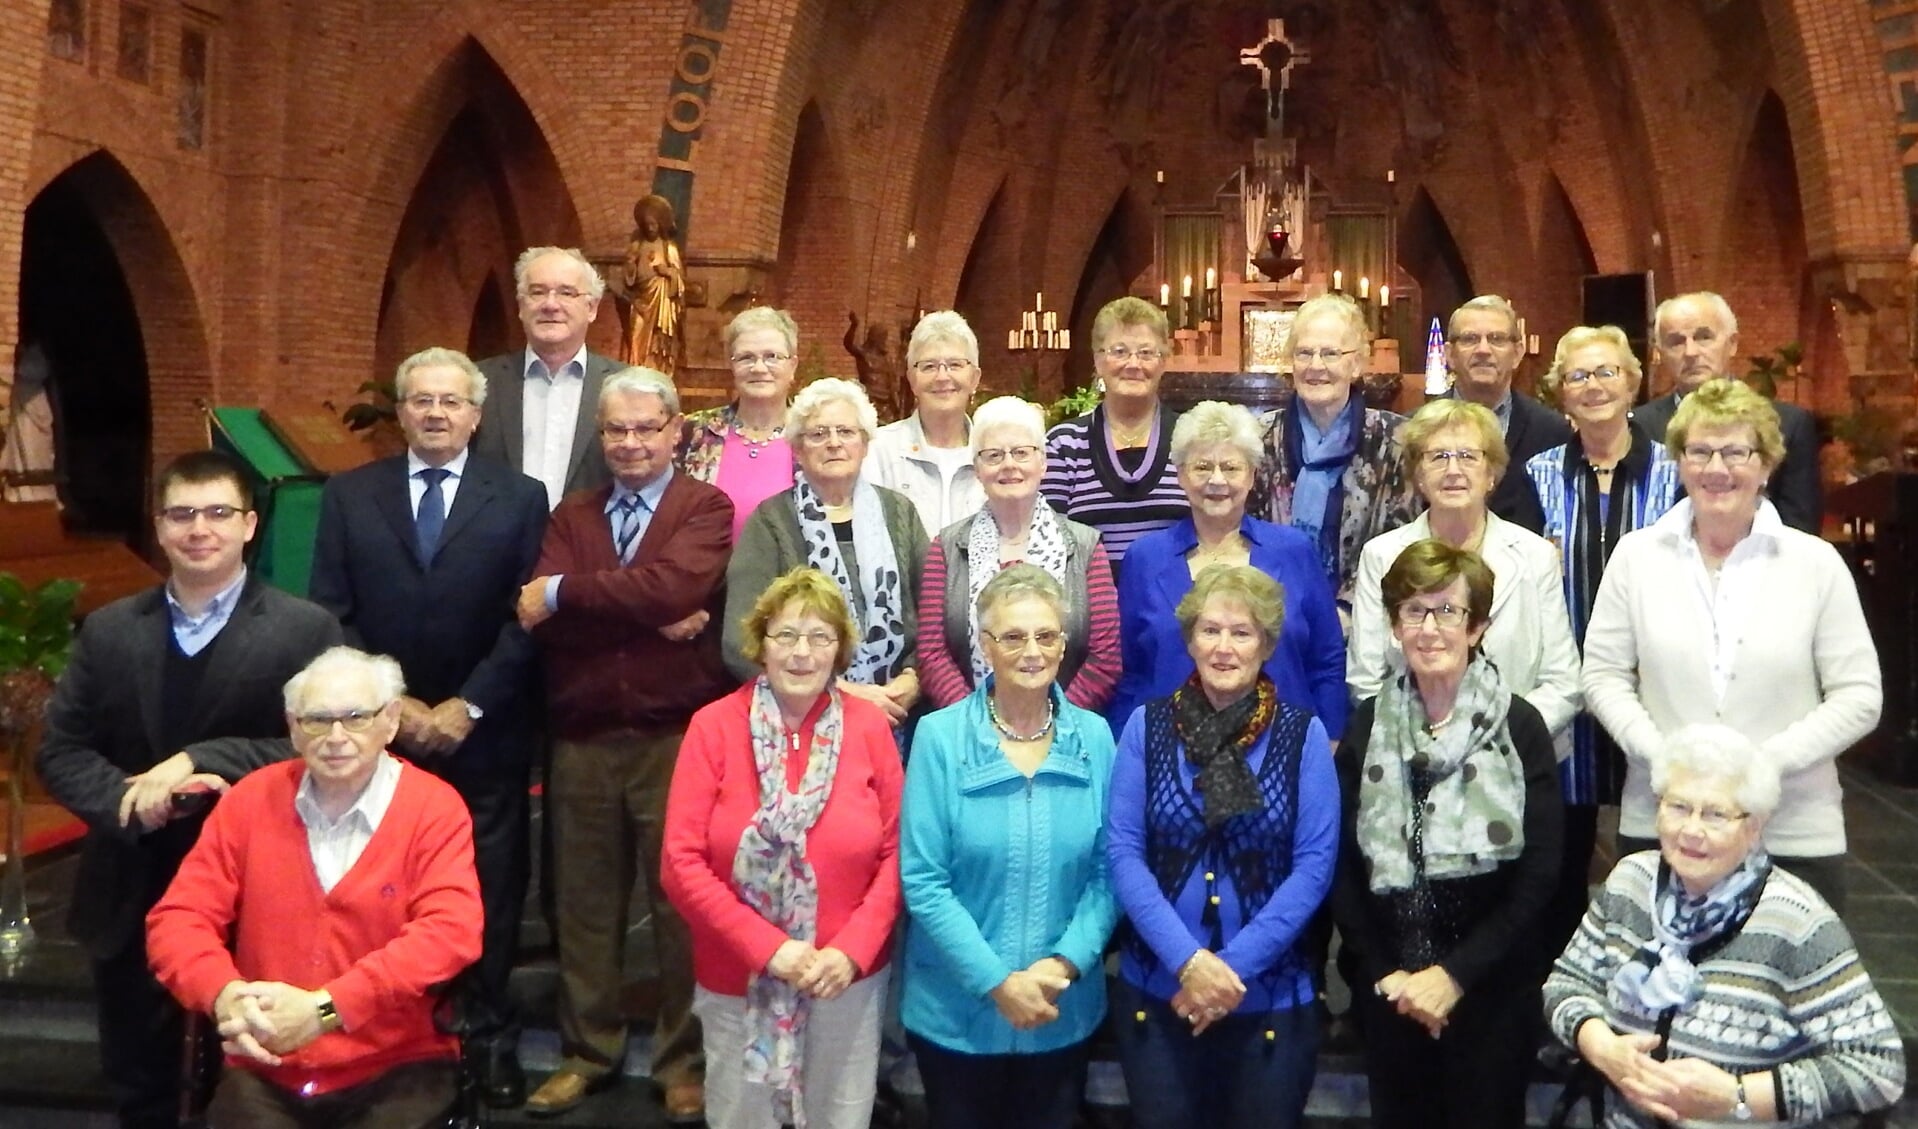 Veertig jaar lang is het het St. Janskoor dat de sfeer van de kerkdiensten in Hoeven aanzienlijk verhoogd. FOTO PRIVÉBEZIT